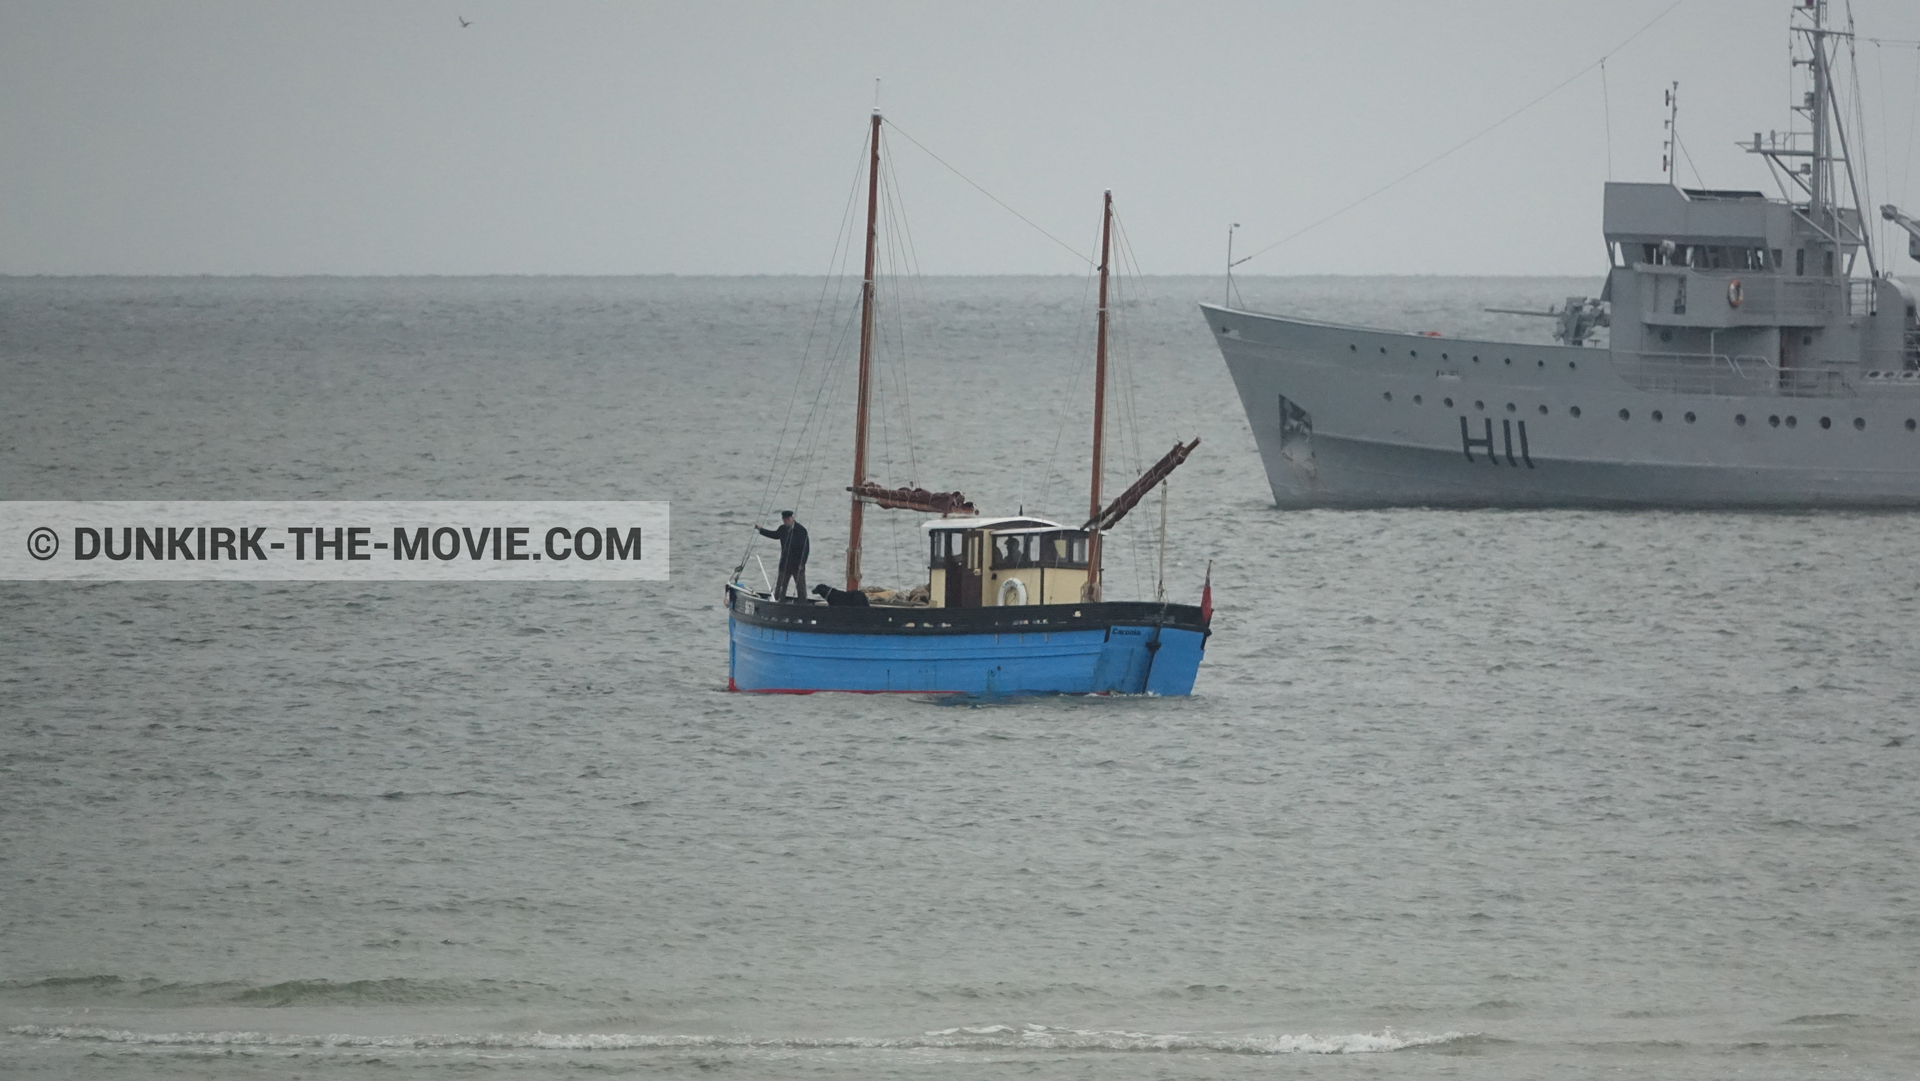 Fotos con barco, H11 - MLV Castor,  durante el rodaje de la película Dunkerque de Nolan